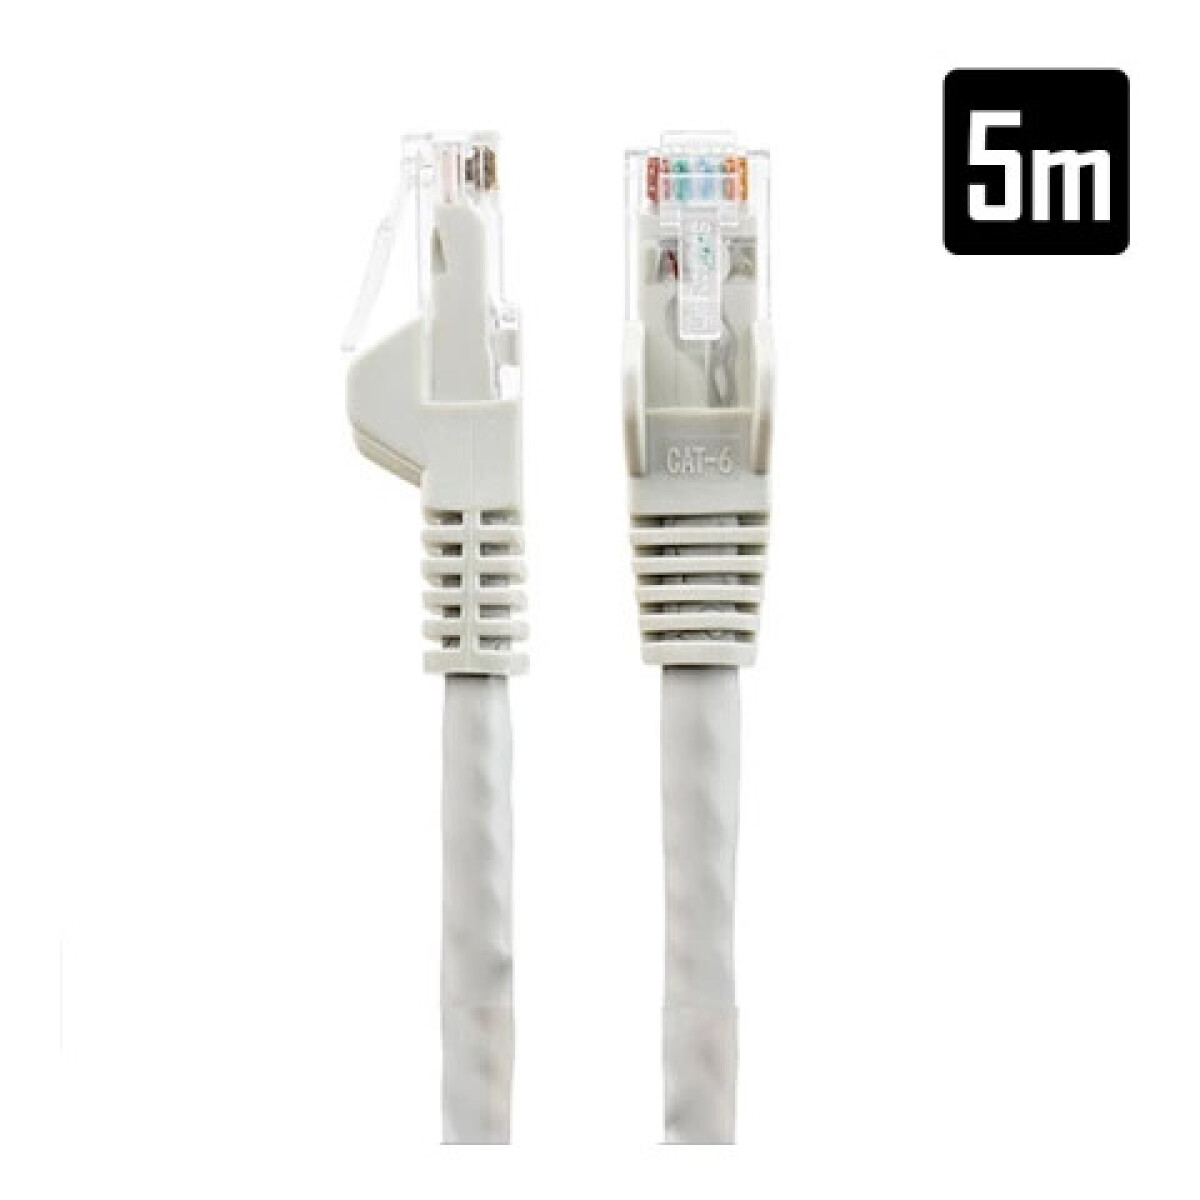 Cable de red premium 5M - Unica 